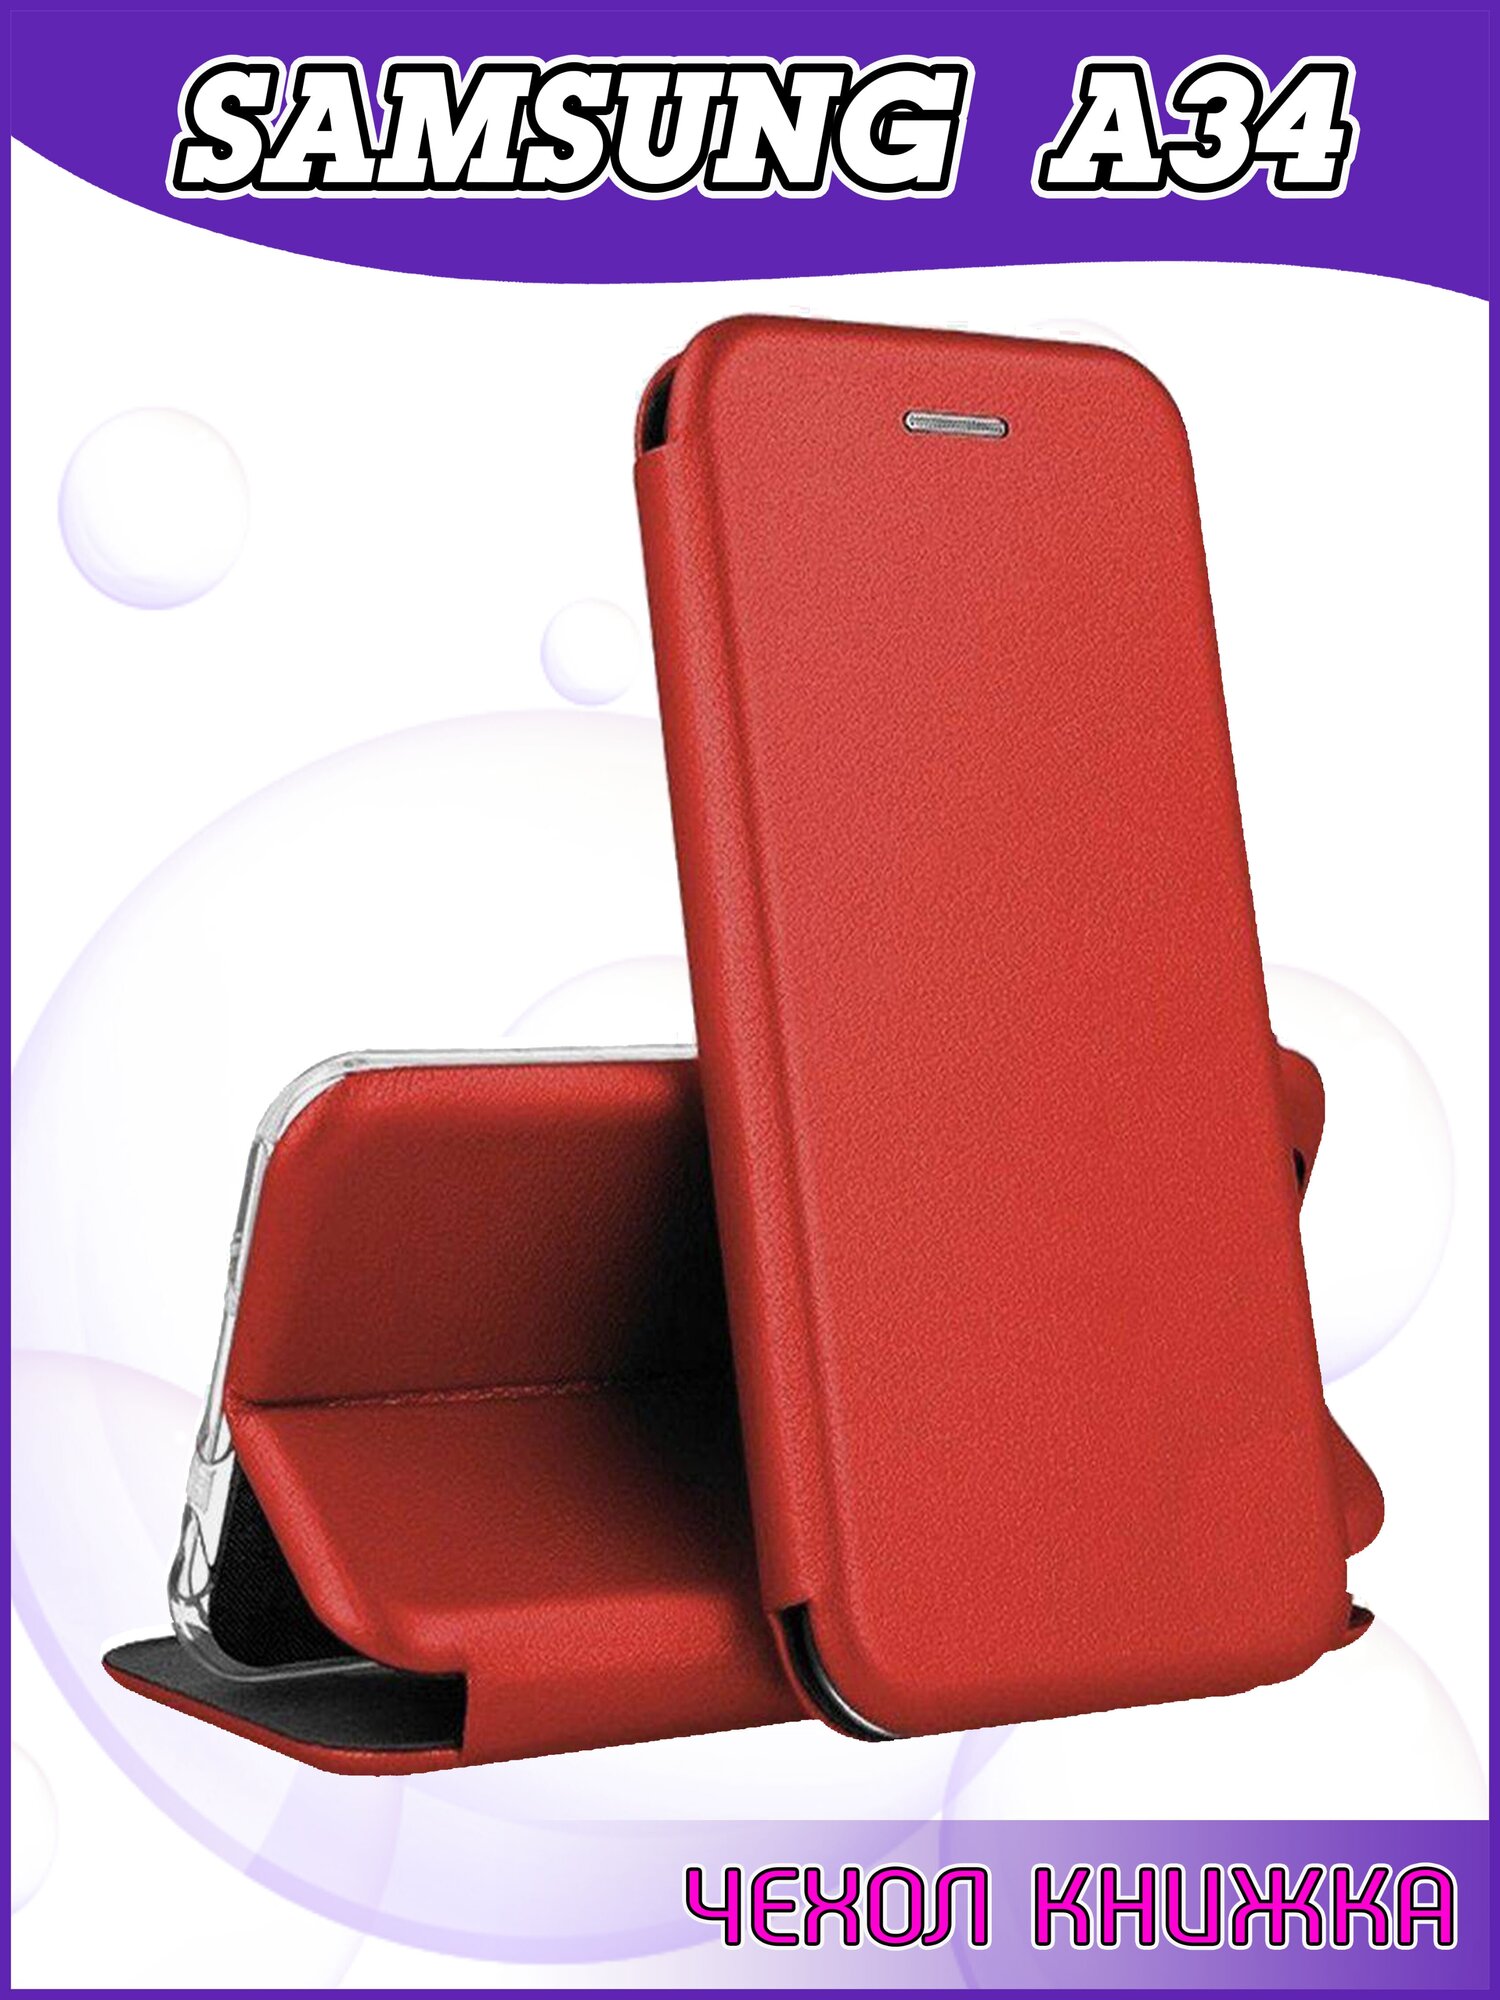 Чехол книжка Samsung Galaxy A34 / Самсунг А34 защитный качественный искусственная кожаный противоударный красный